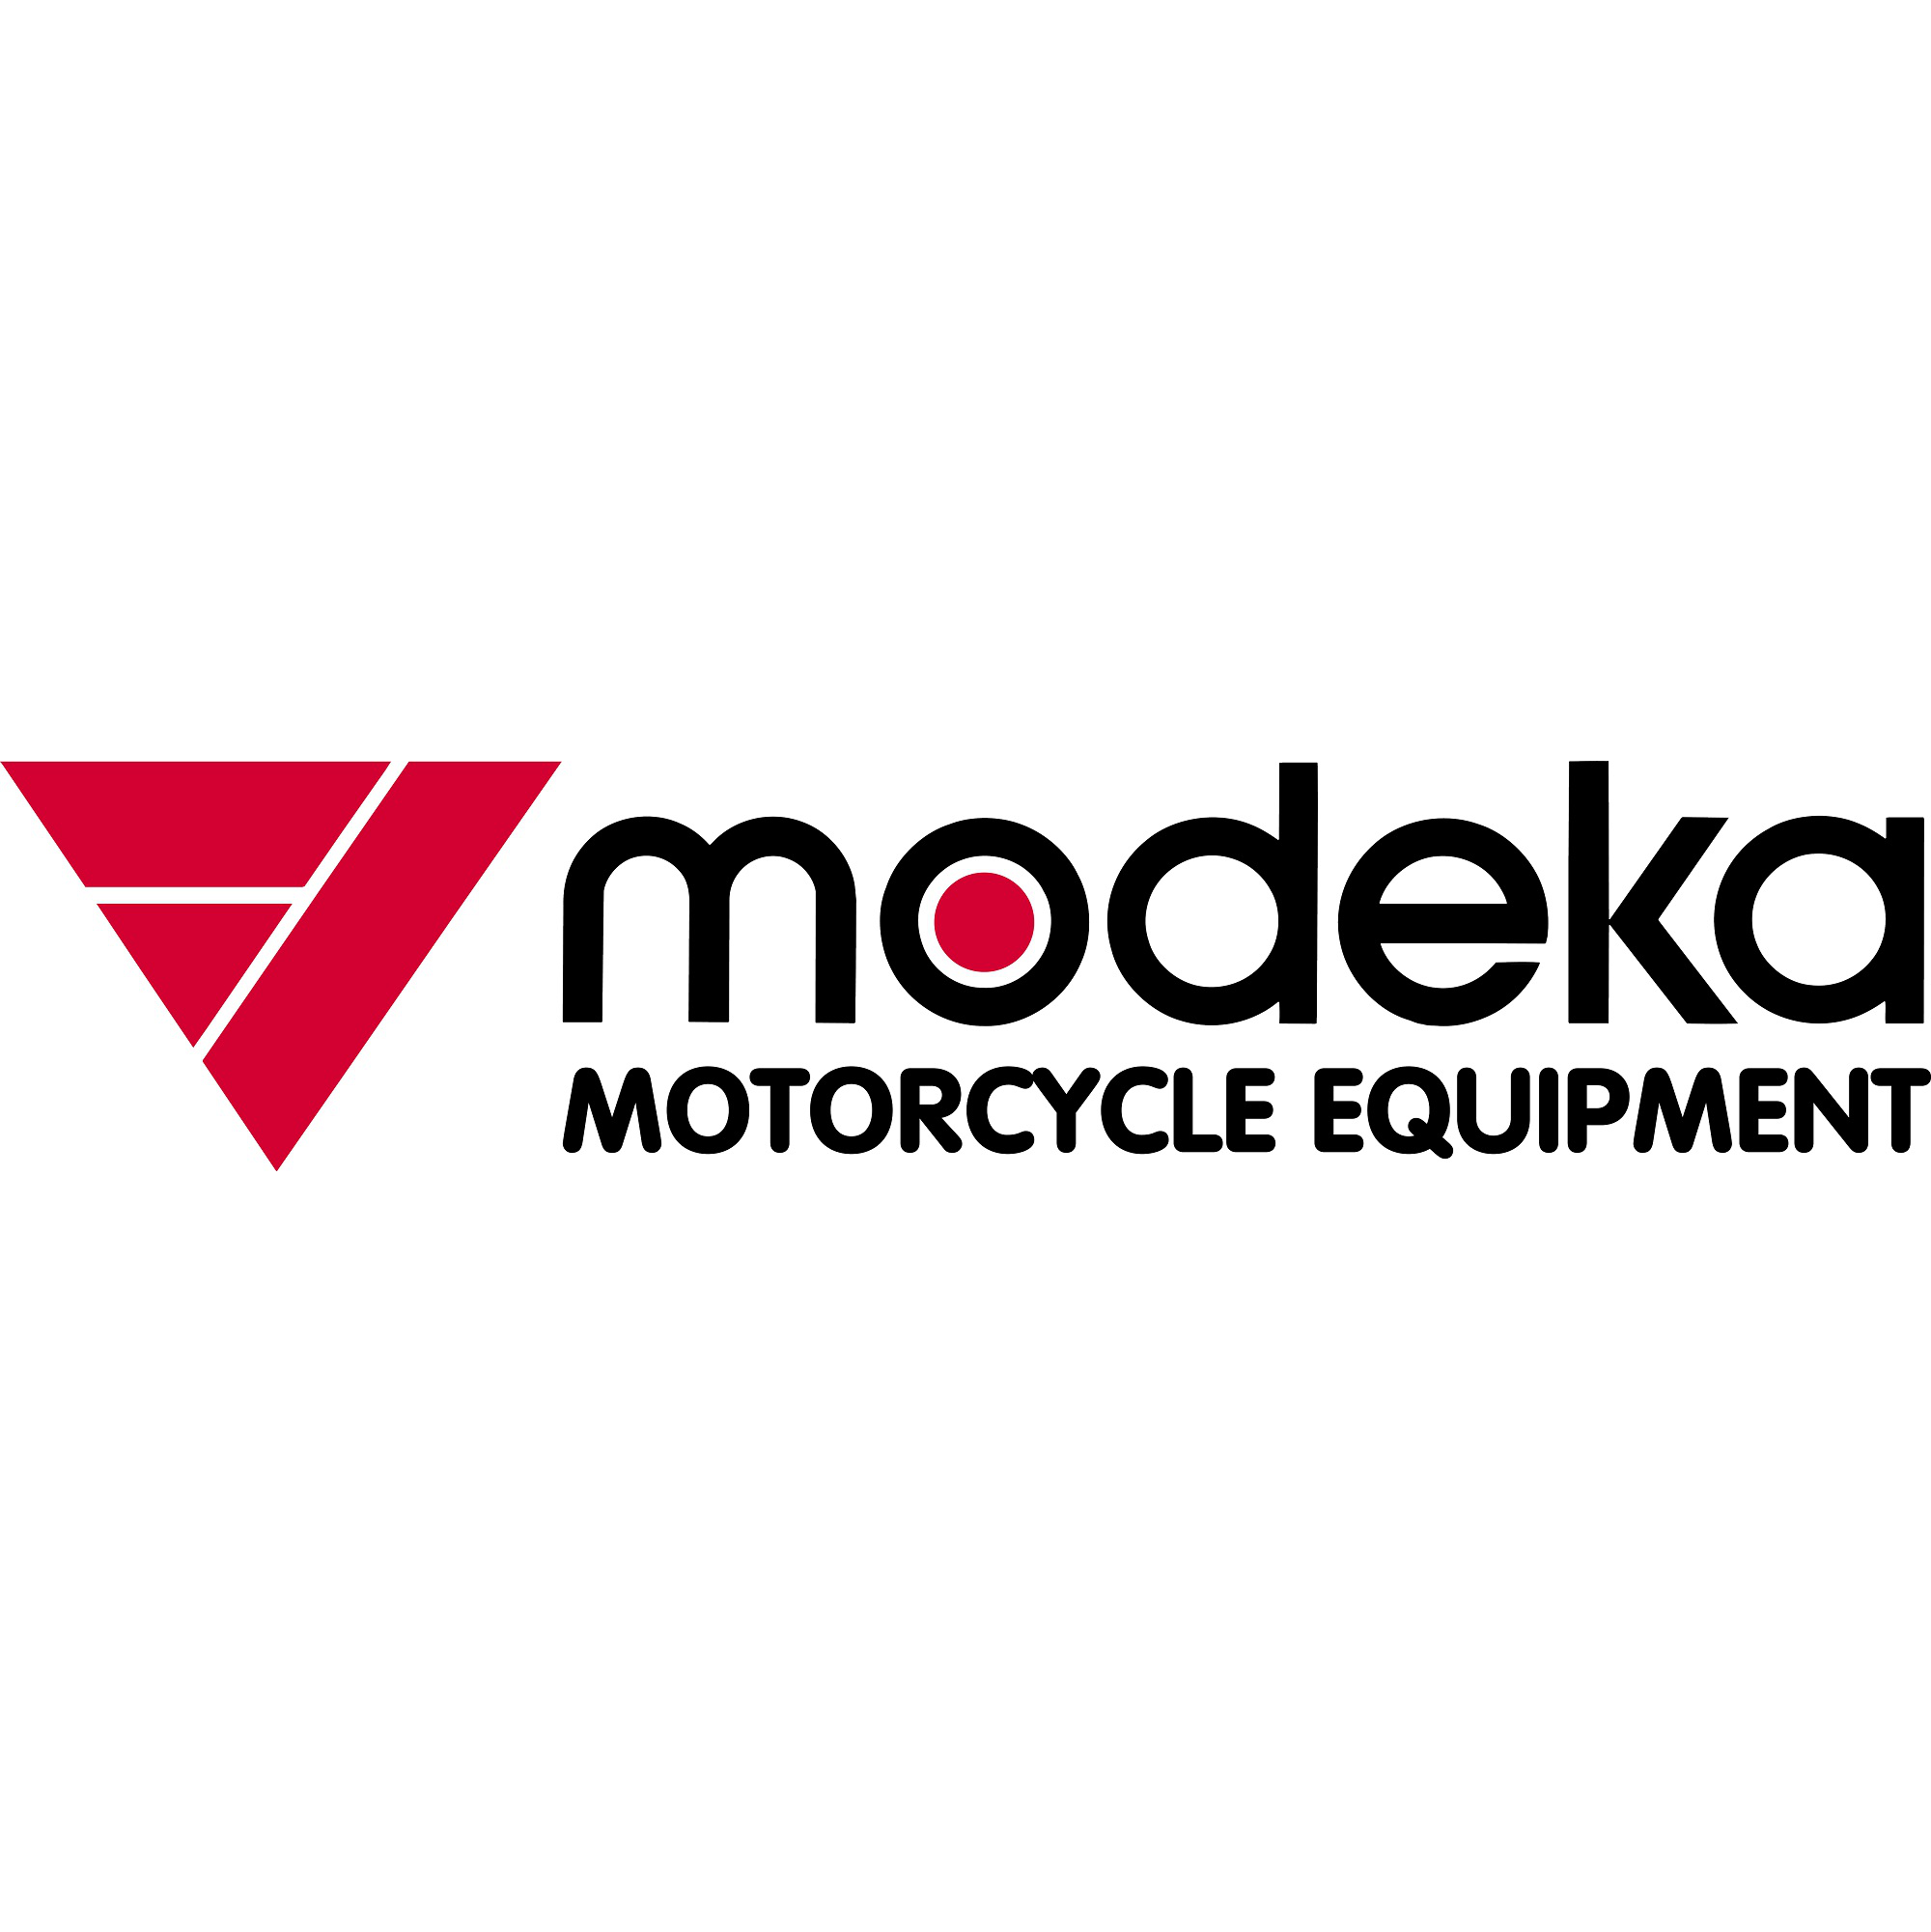 Modeka Logo